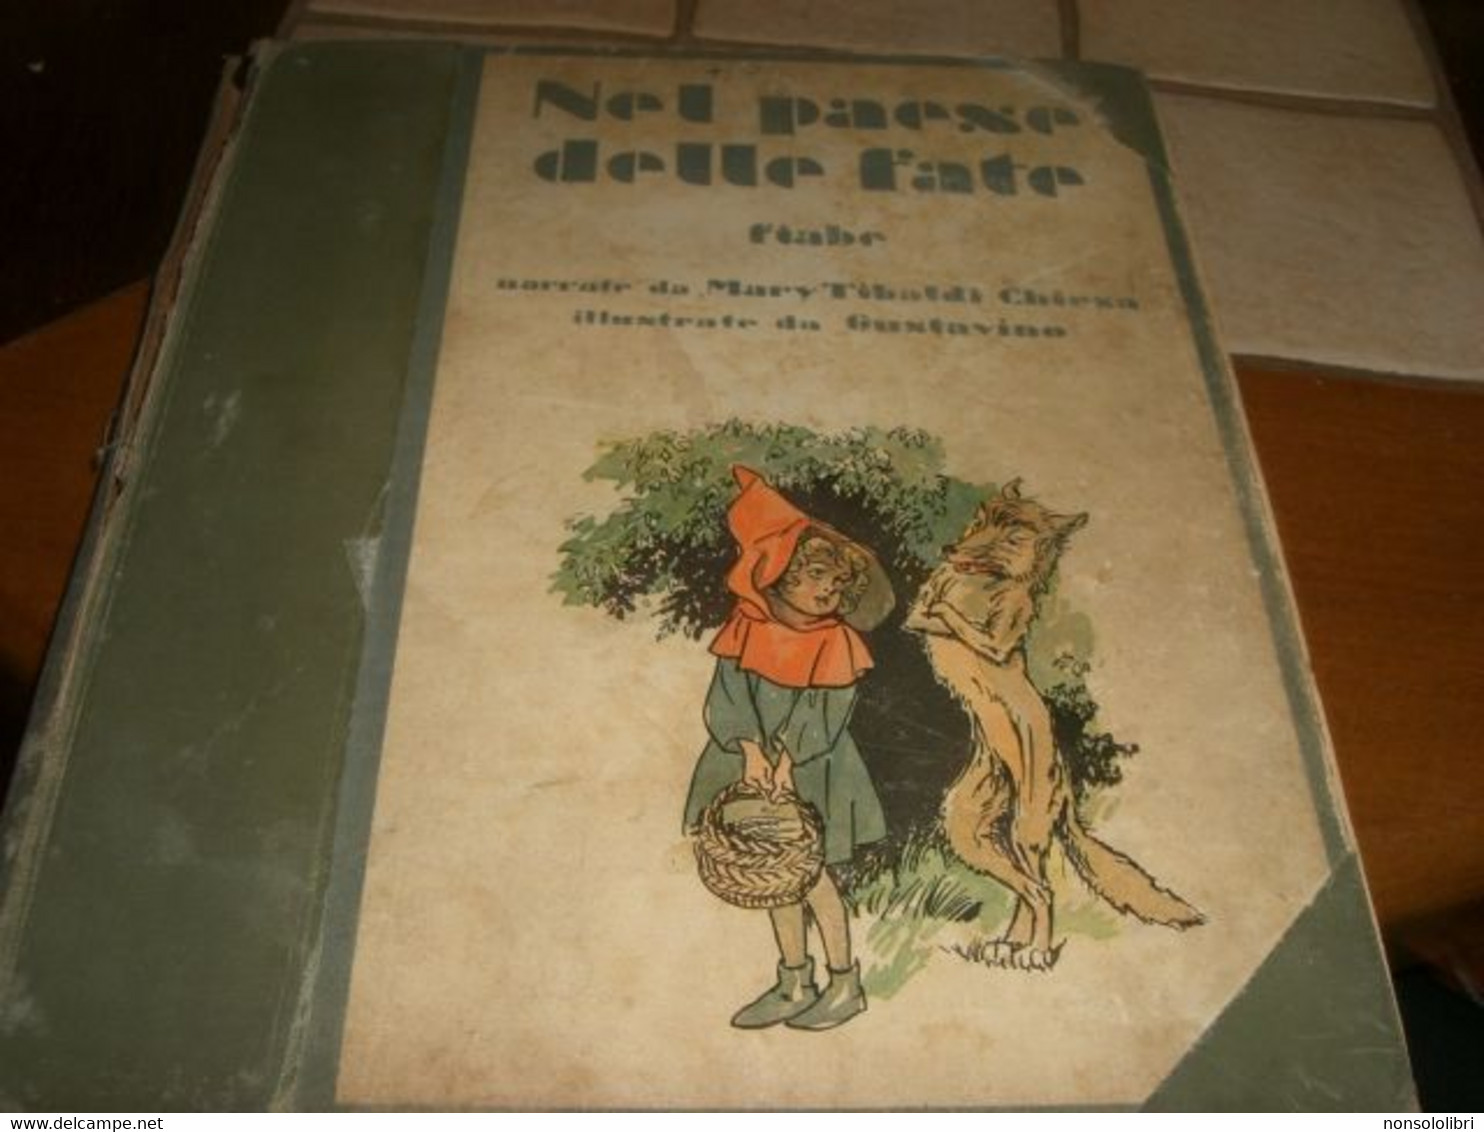 LIBRO "NEL PAESE DELLE FATE" SCALA D'ORO -ILL.GUSTAVINO 1932 SERIE I PER I RAGAZZI DI ANNI 6 N.3 - Nouvelles, Contes